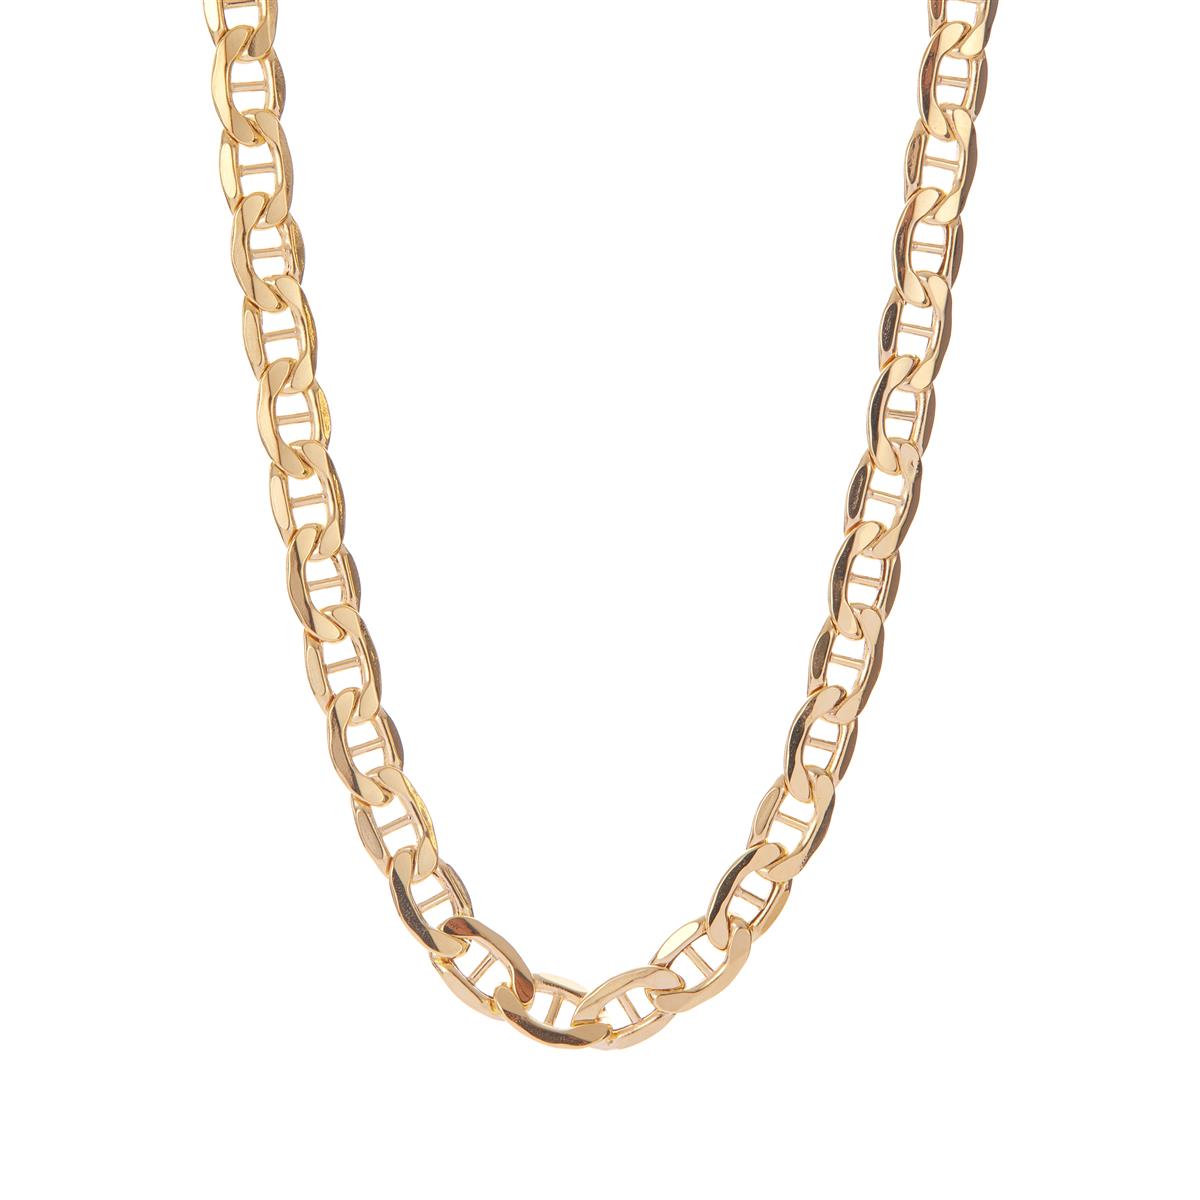 22 9K Gold Altro Rambo Chain Necklace 9g | Gemporia